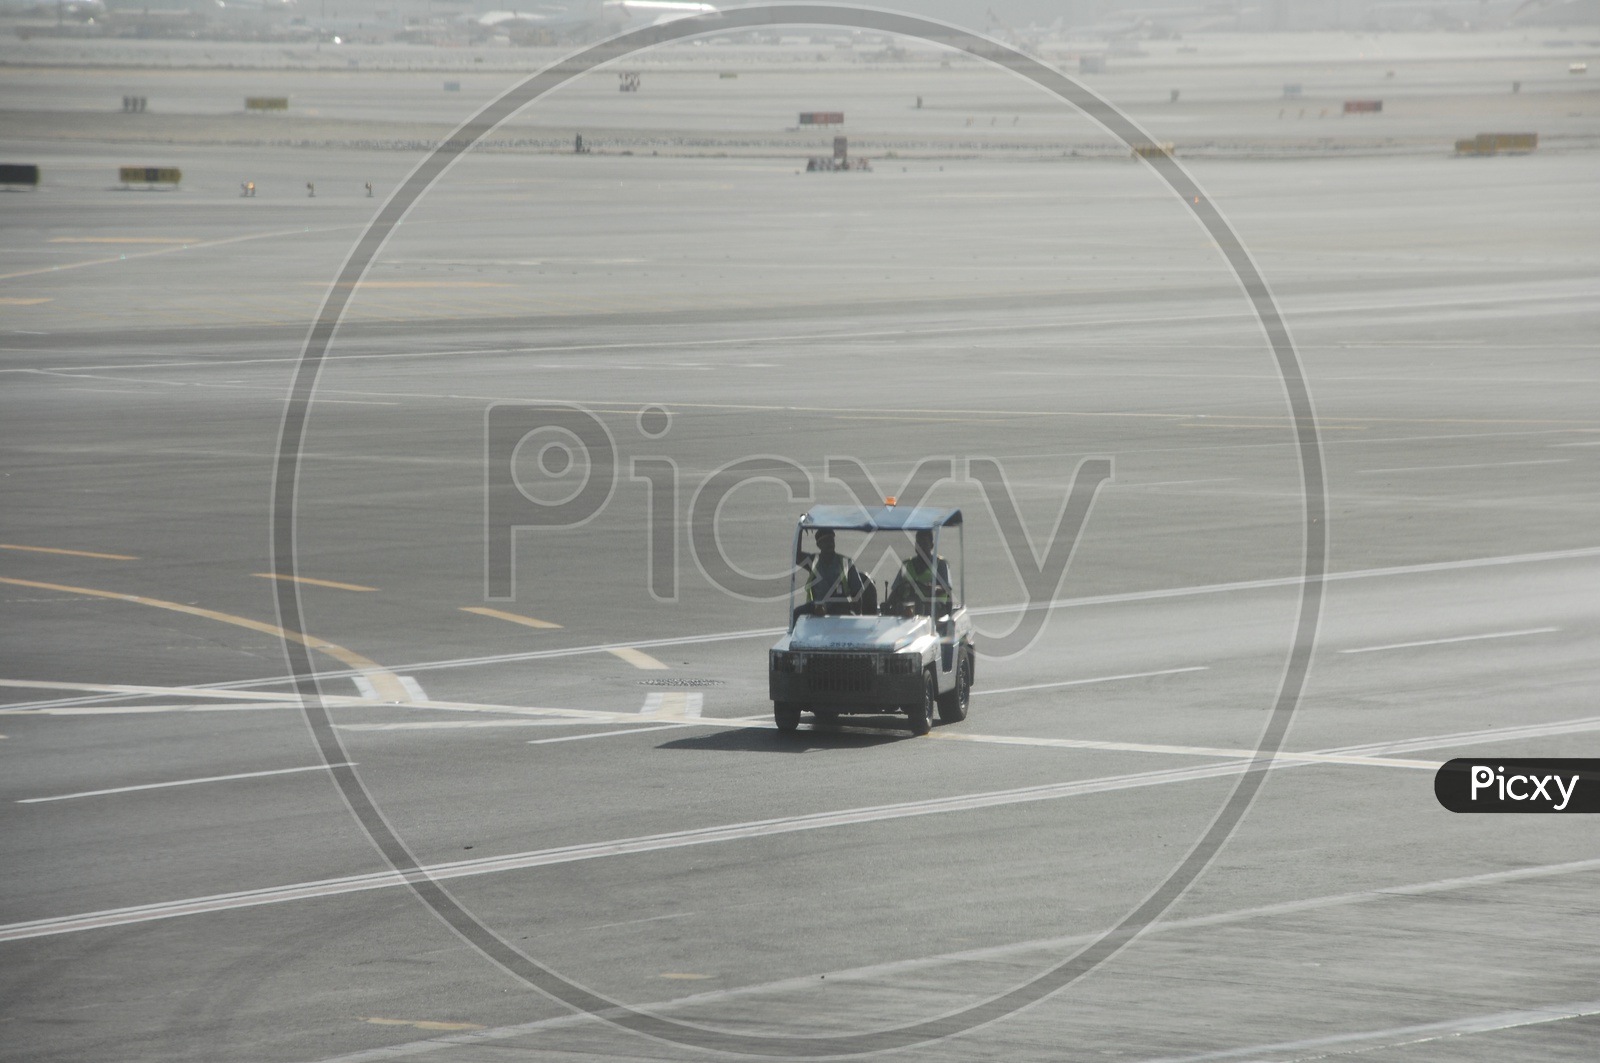 Airport Security van moving on Runway